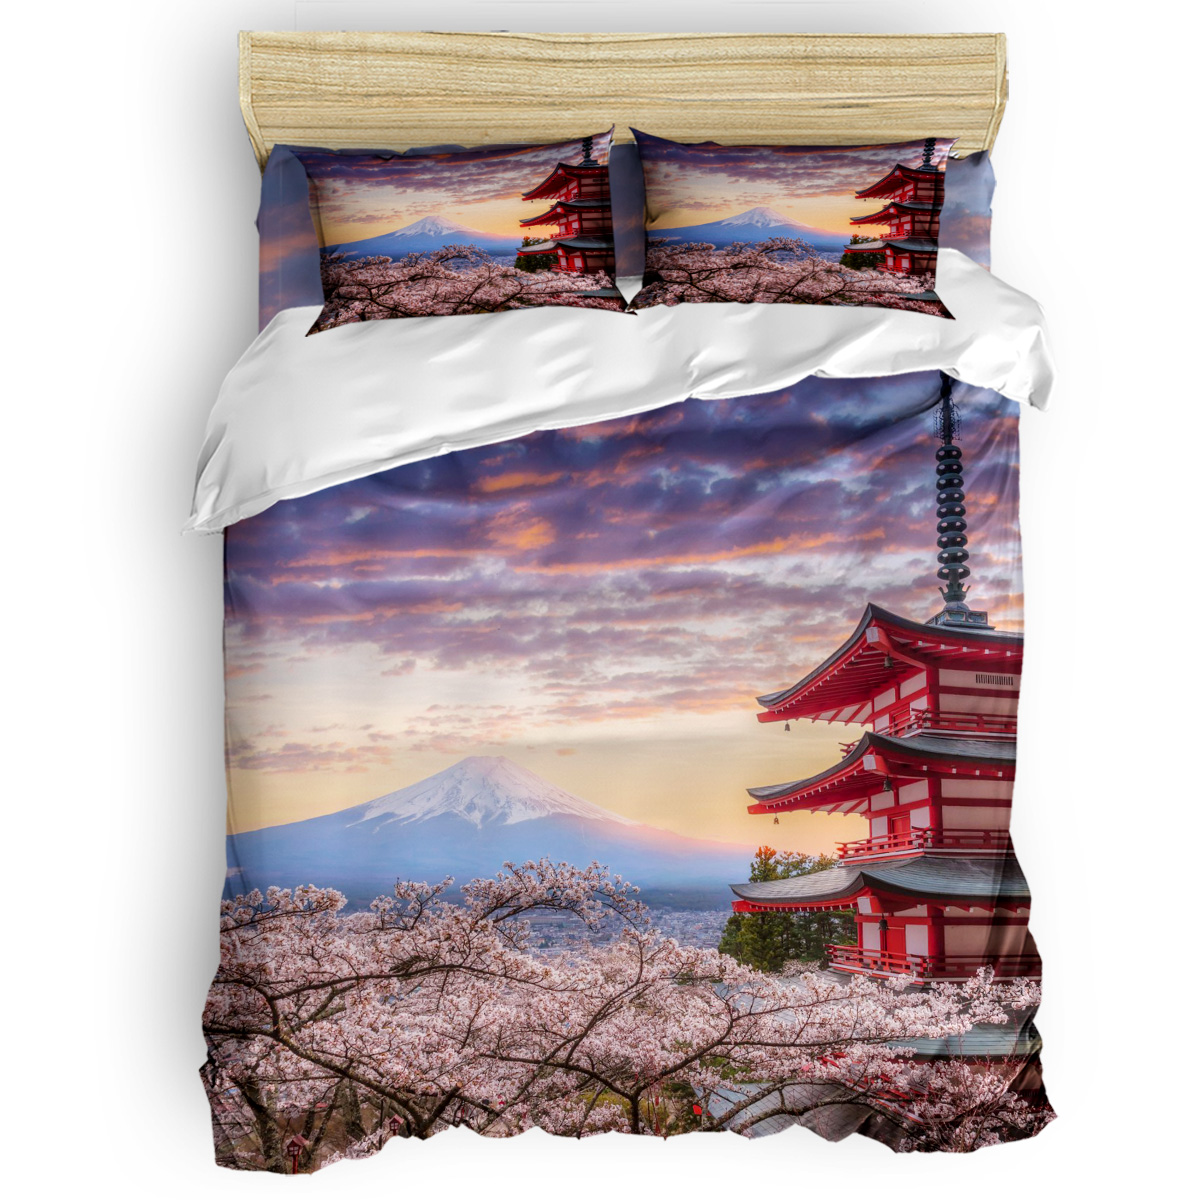 Juego de cubierta dórdica de color rosa pálido, rama Sakura con flores de cereza tierna primavera japonesa, juego de ropa de cama decorativo de 3 piezas, tamaño de rey